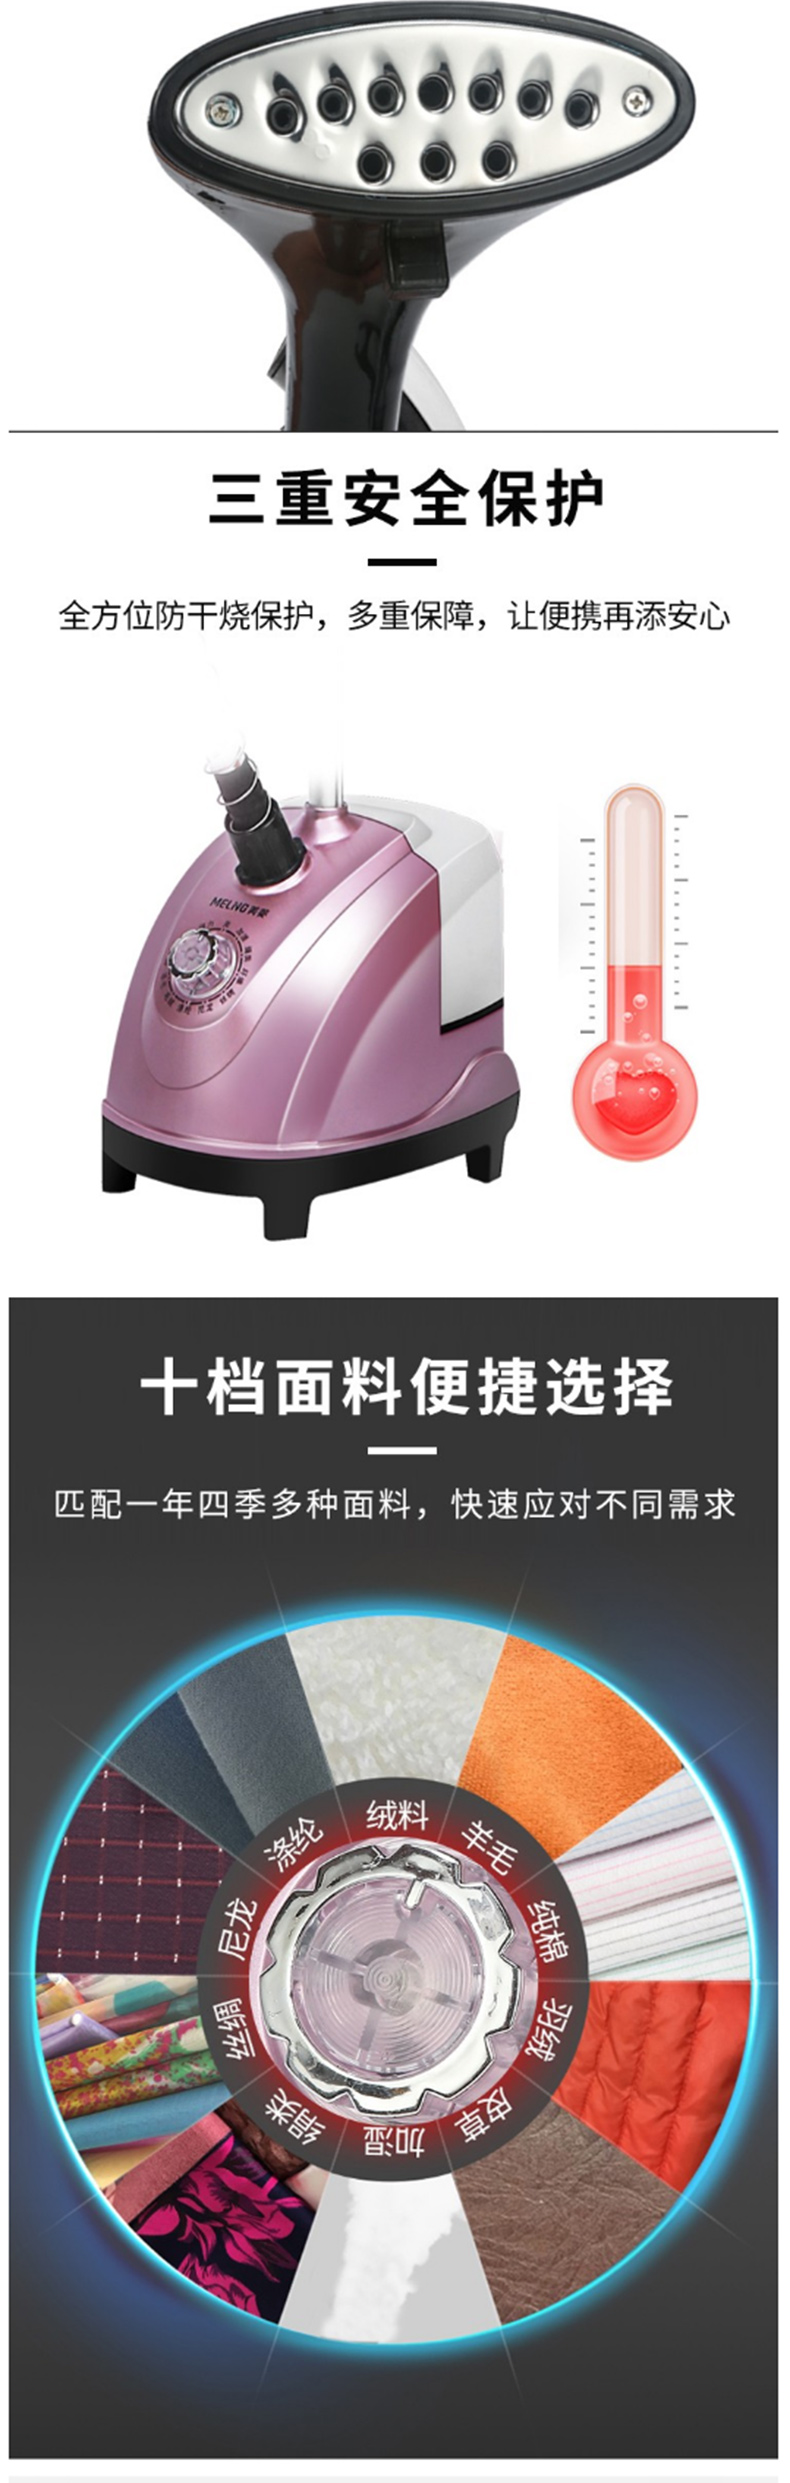 美菱 MeiLing 手持挂烫机 MI-GLZ-0002 200ml (粉色) 起订量500